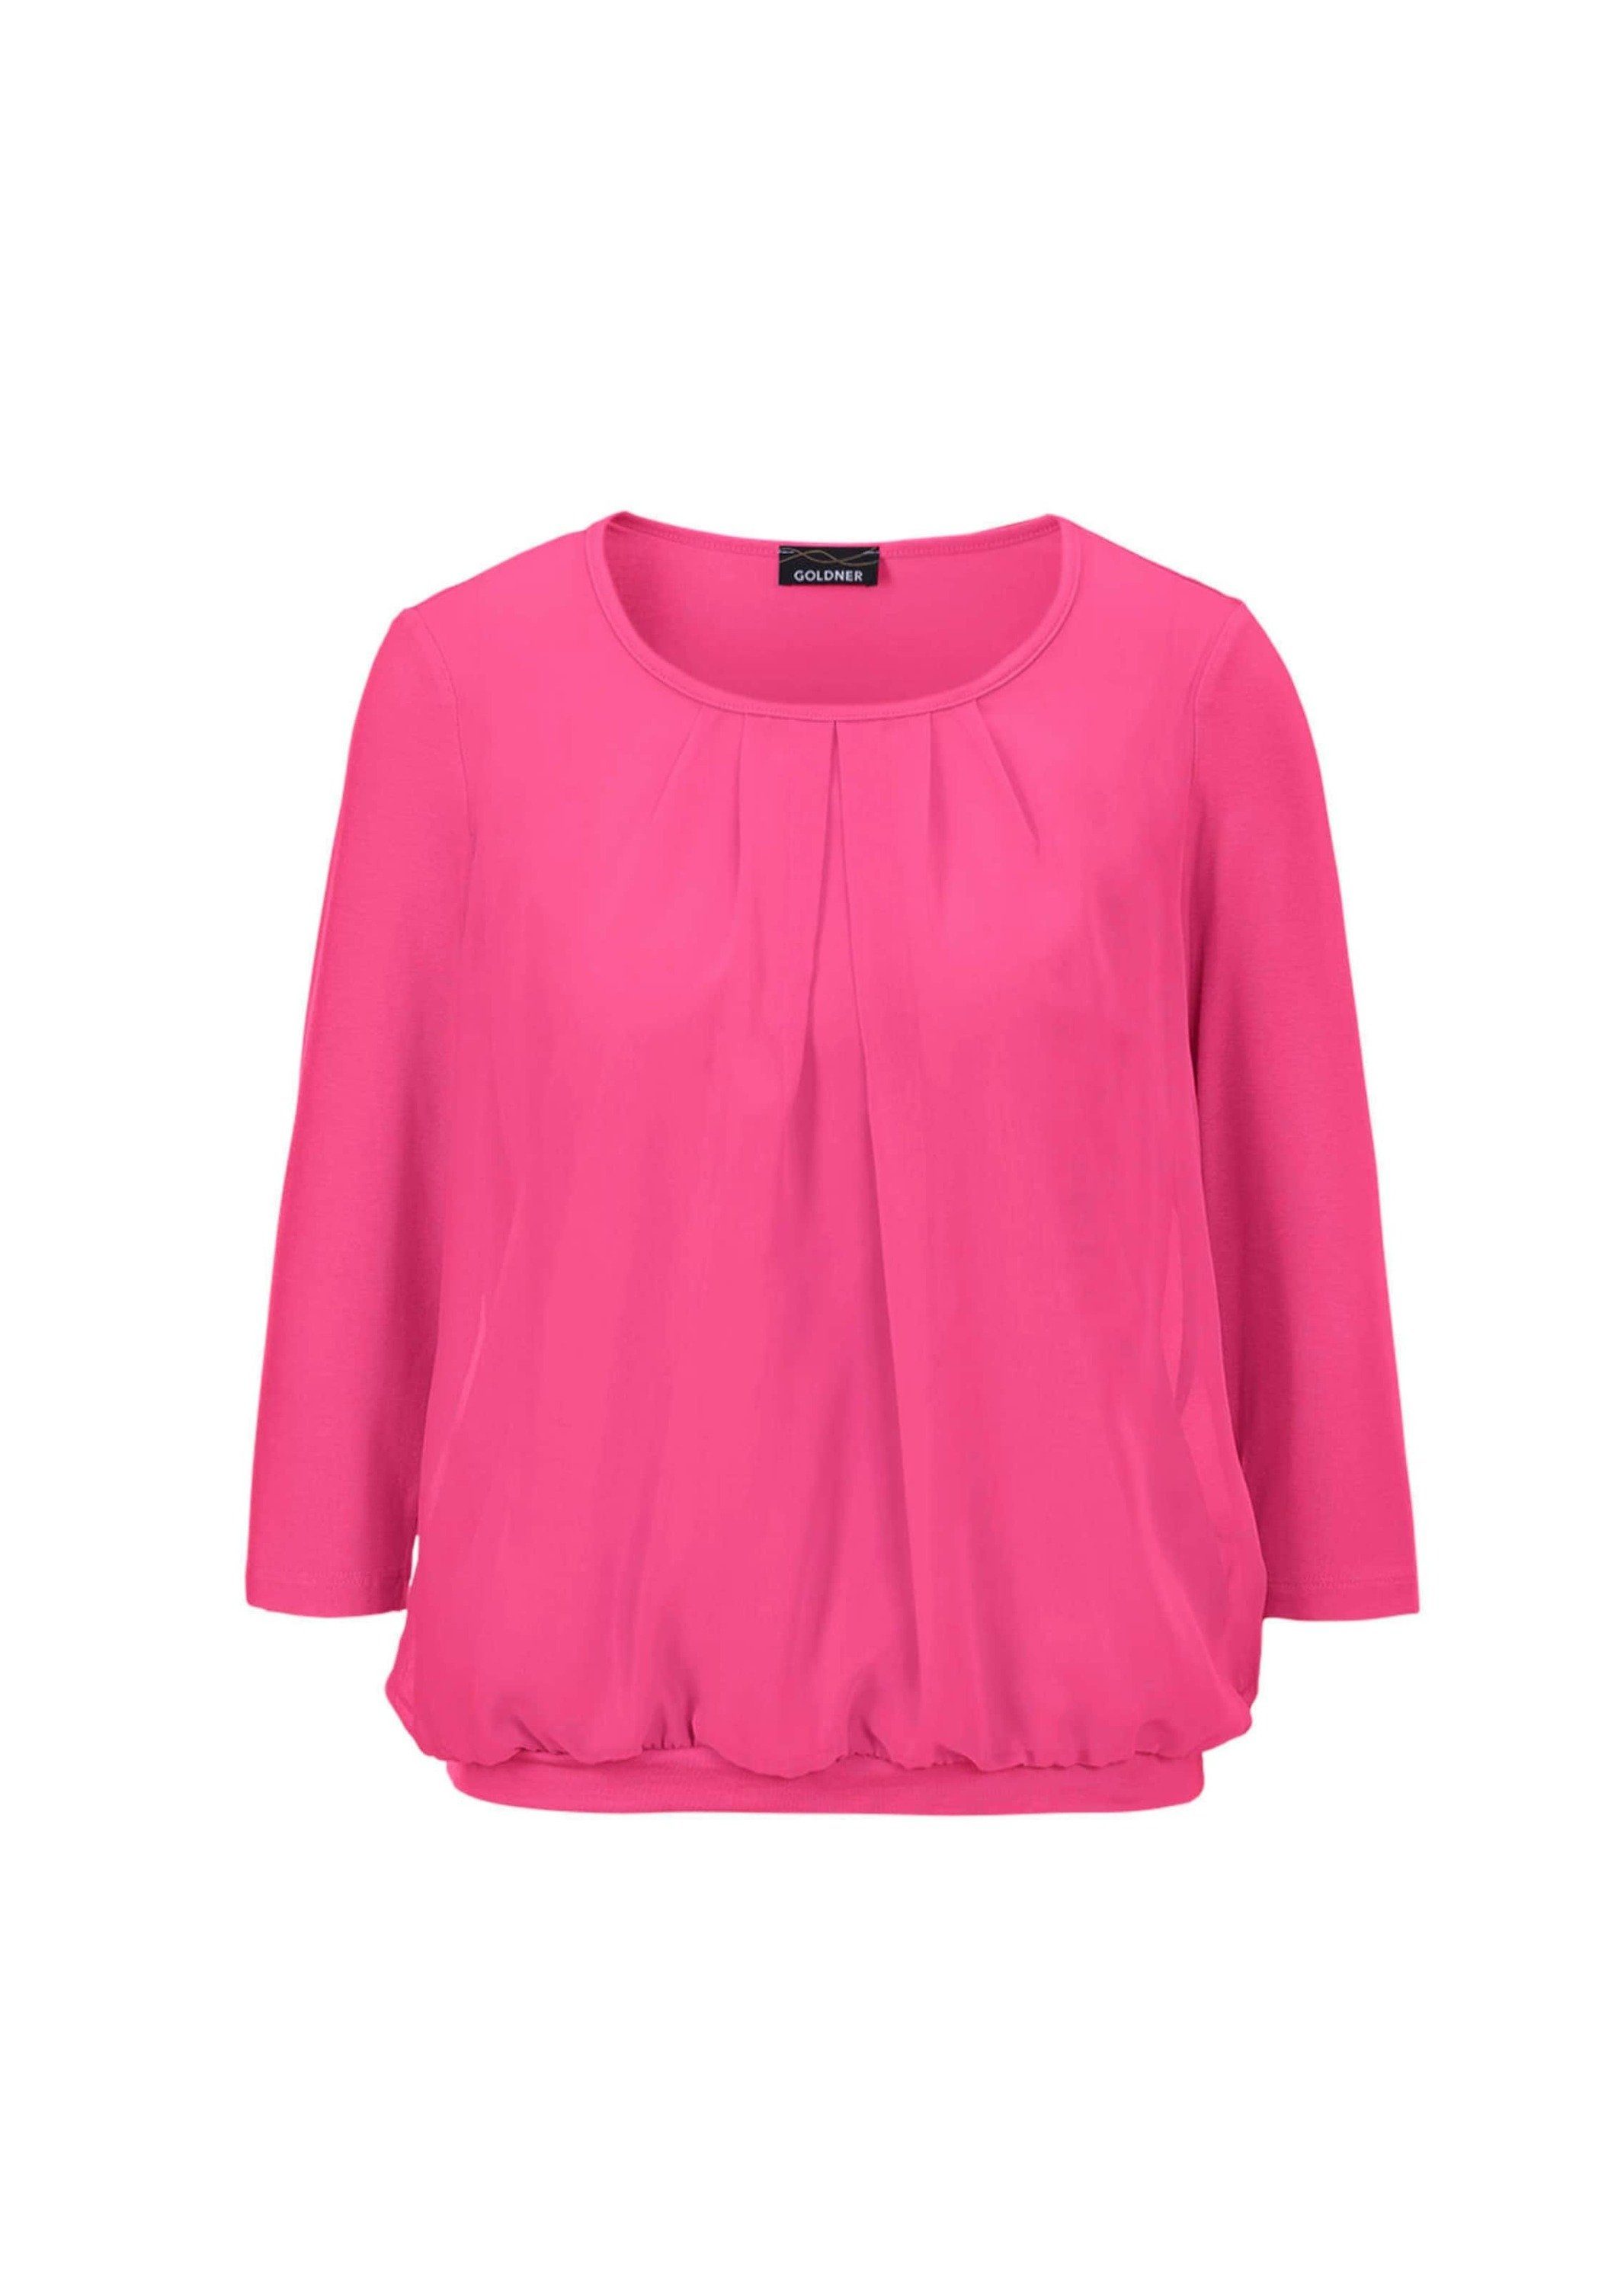 GOLDNER Kurzarmbluse Gepflegtes eleganter Shirt pink Blusen-Optik in